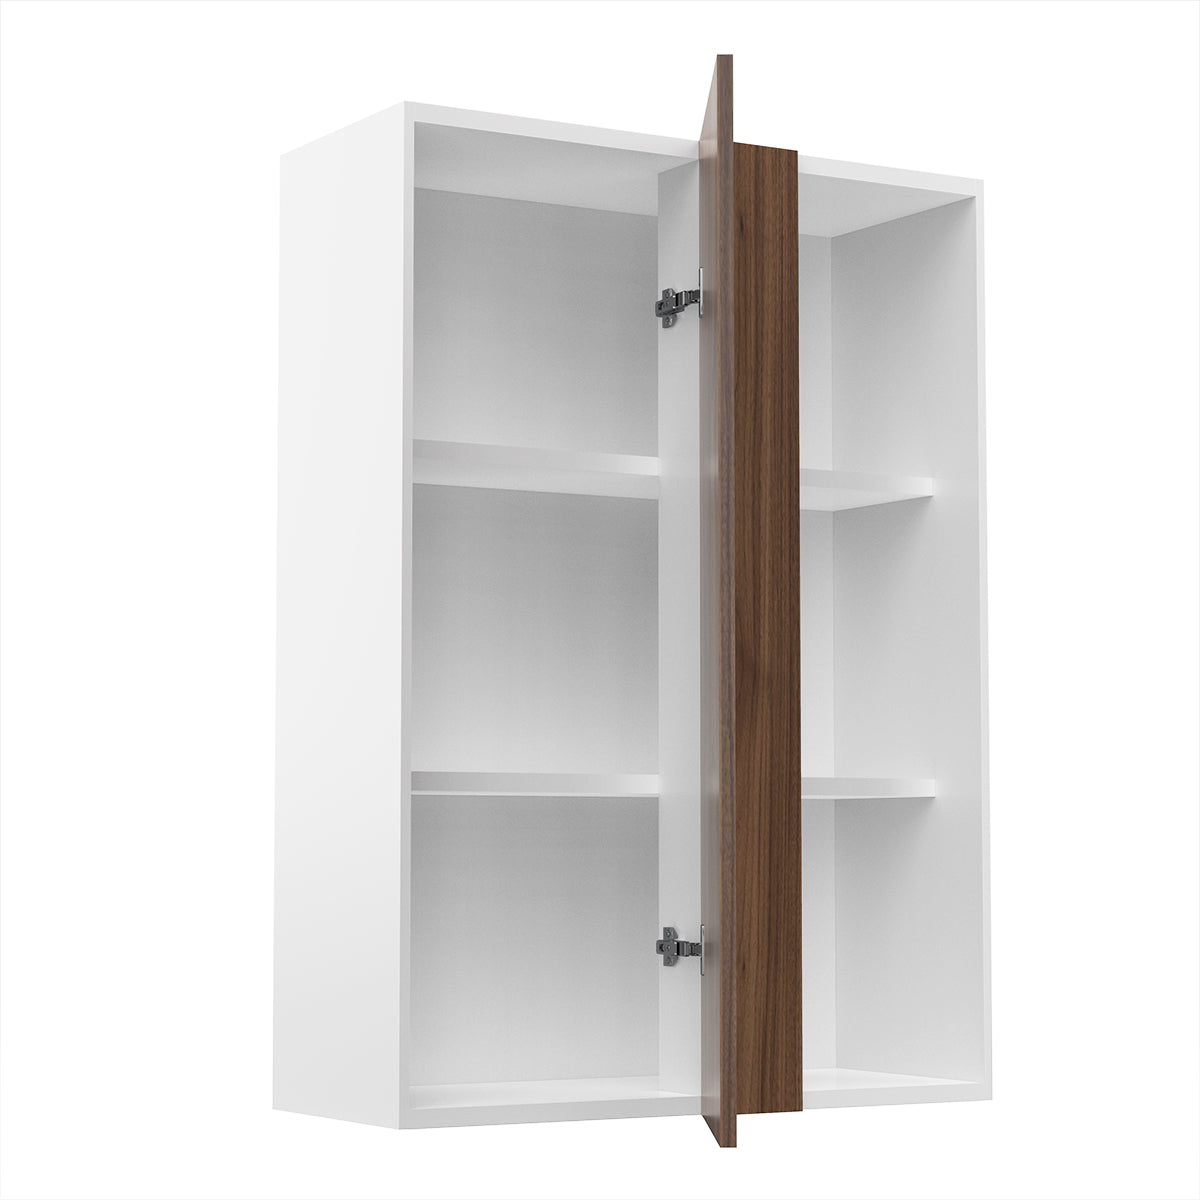 RTA - Walnut - Single Door Wall Cabinets | 30"W x 42"H x 12"D